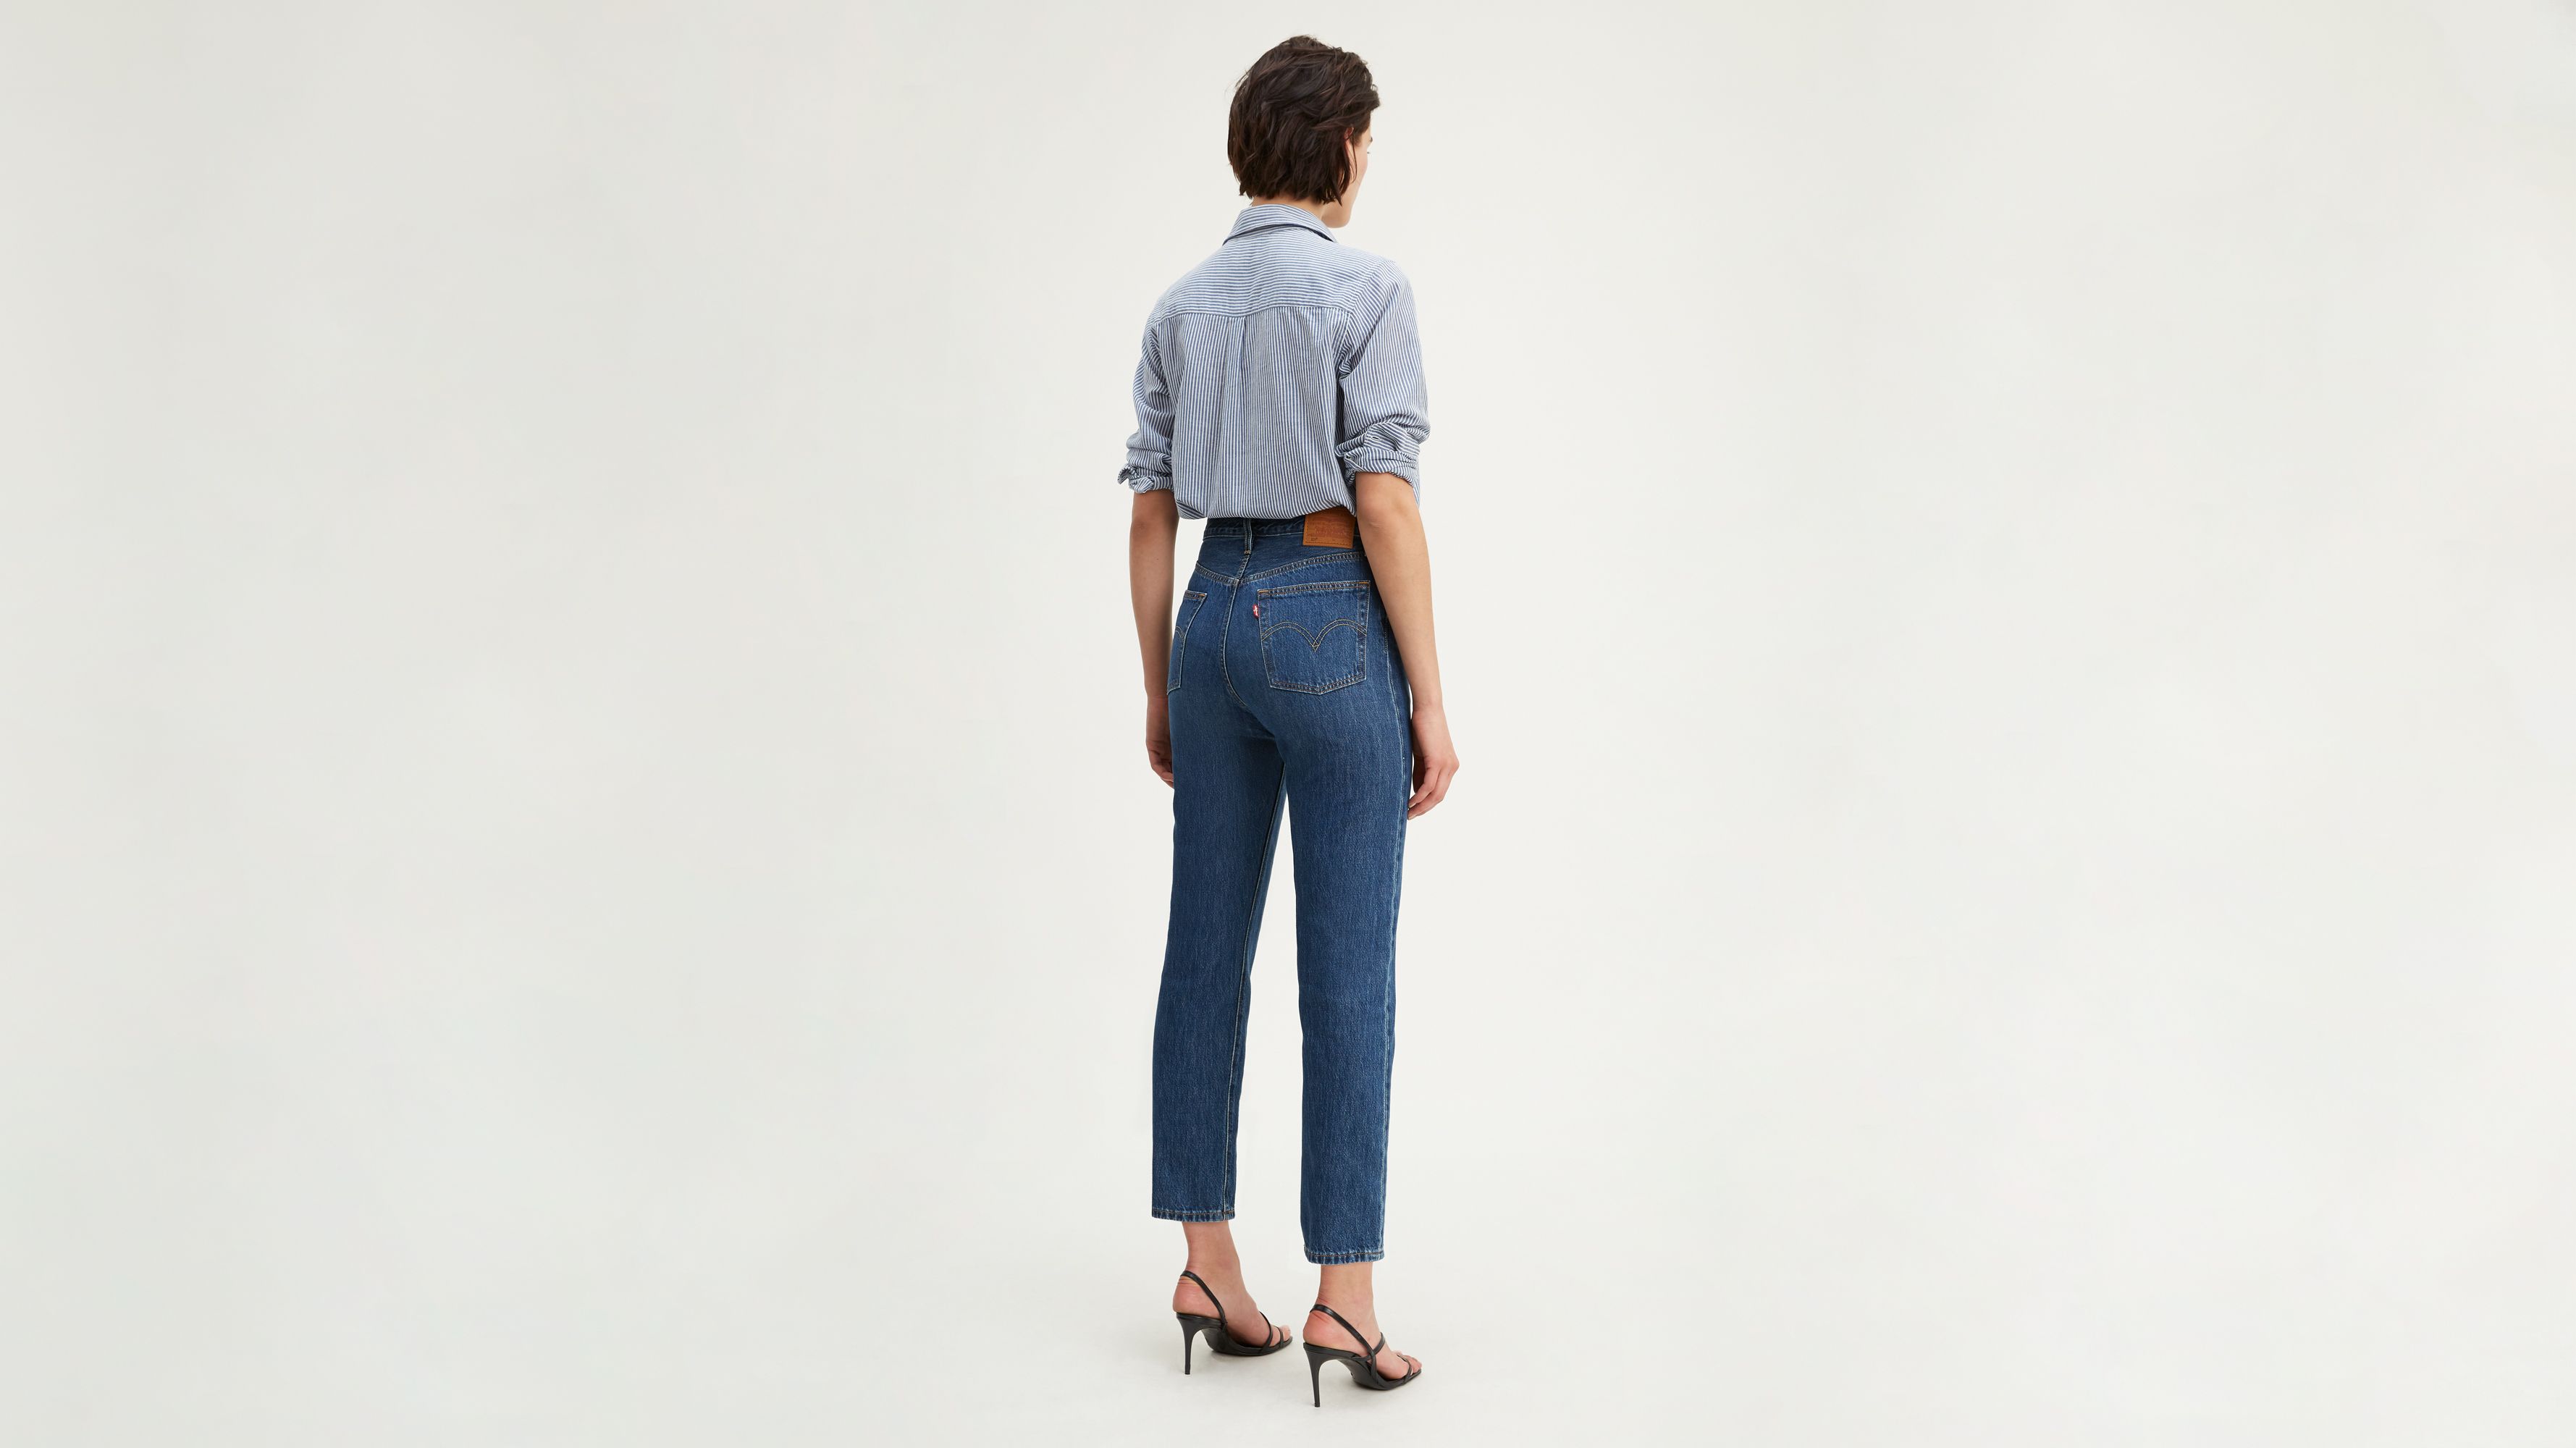 Levi's Damen 501 Crop Jeans